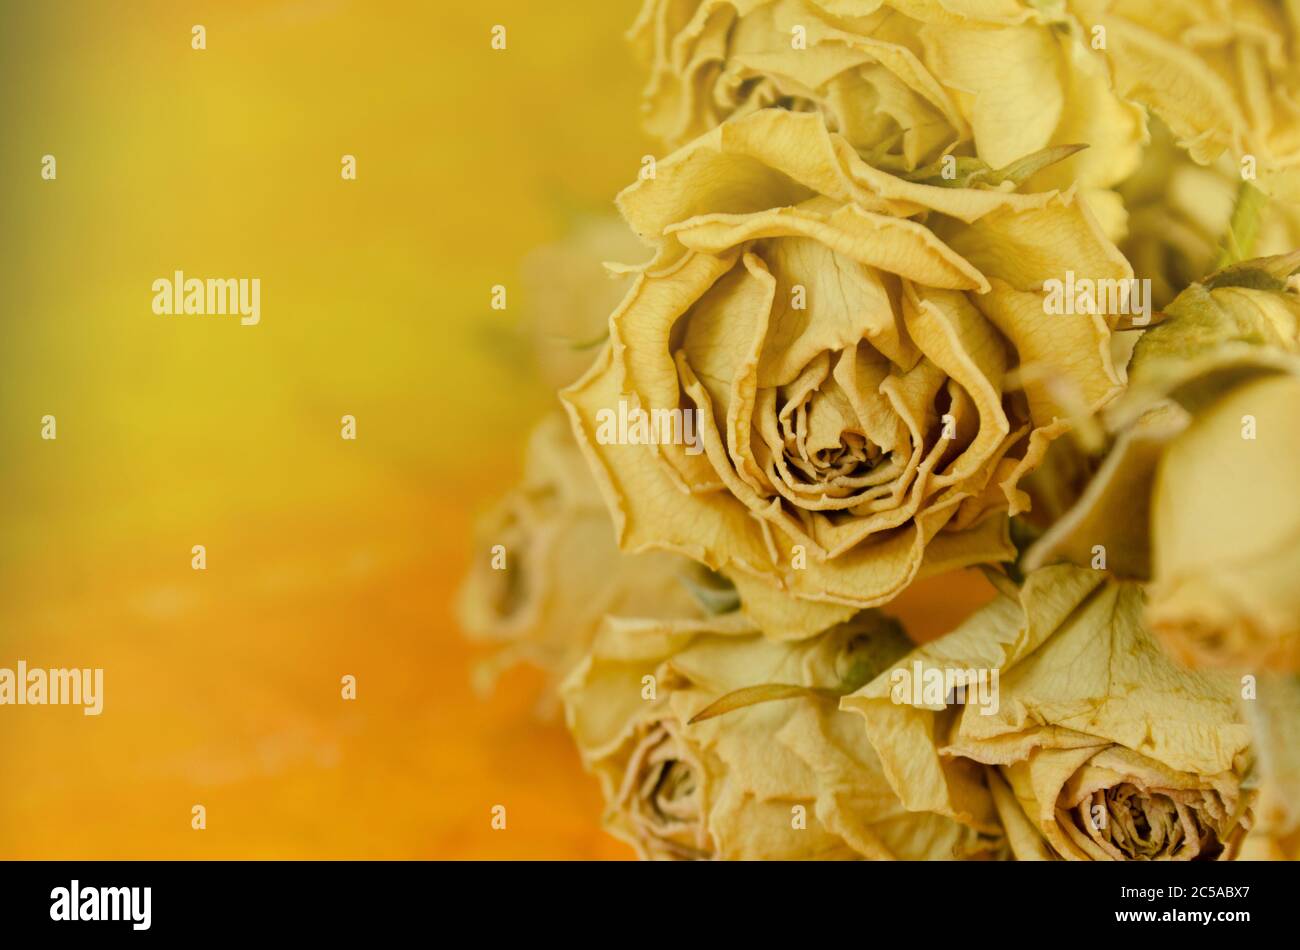 Rose secche su vecchio sfondo di legno. Mazzo di fiori di rosa secchi. Concetto di transizione del tempo Foto Stock